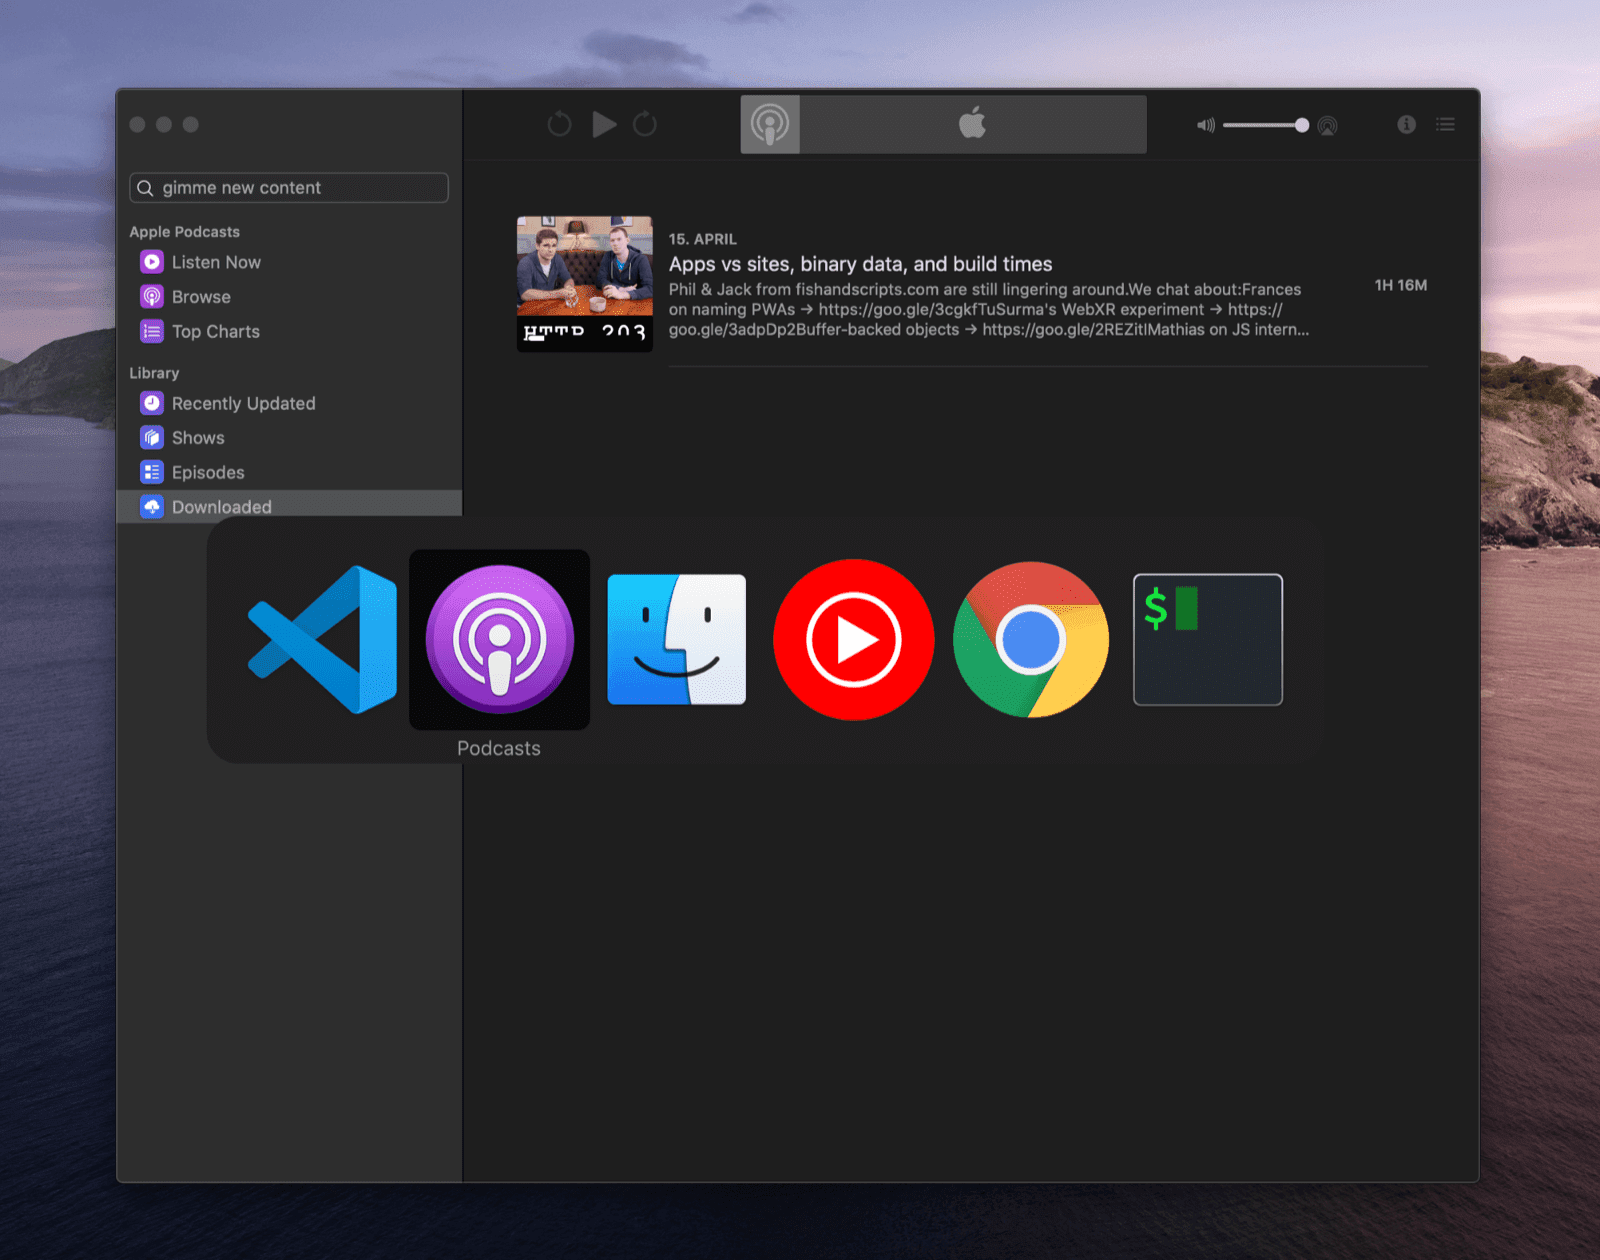 מתג למעבר בין משימות ב-macOS ובו כמה סמלי אפליקציות לבחירה. אחד מהם הוא אפליקציית Podcasts.